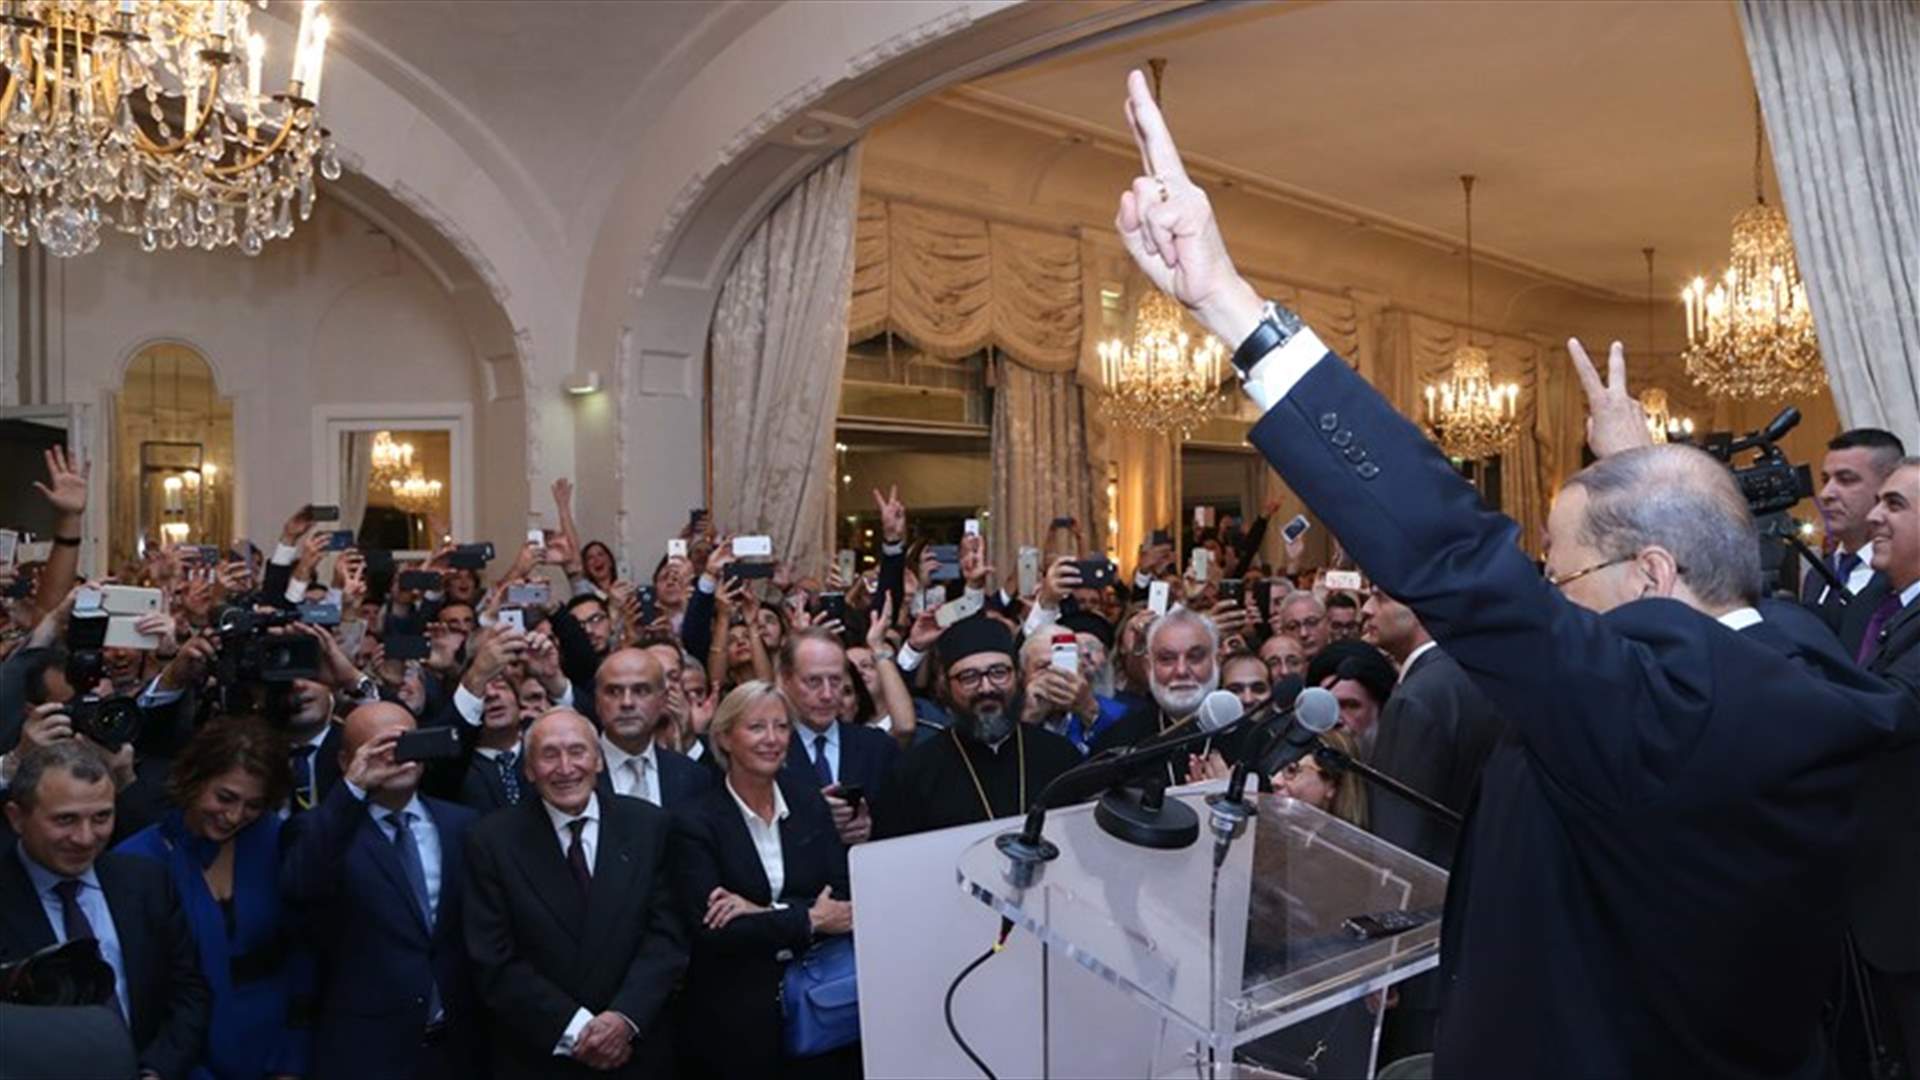 عون امام الجالية اللبنانية في باريس: المرحلة المقبلة هي لإعادة الانضباط الى المؤسسات